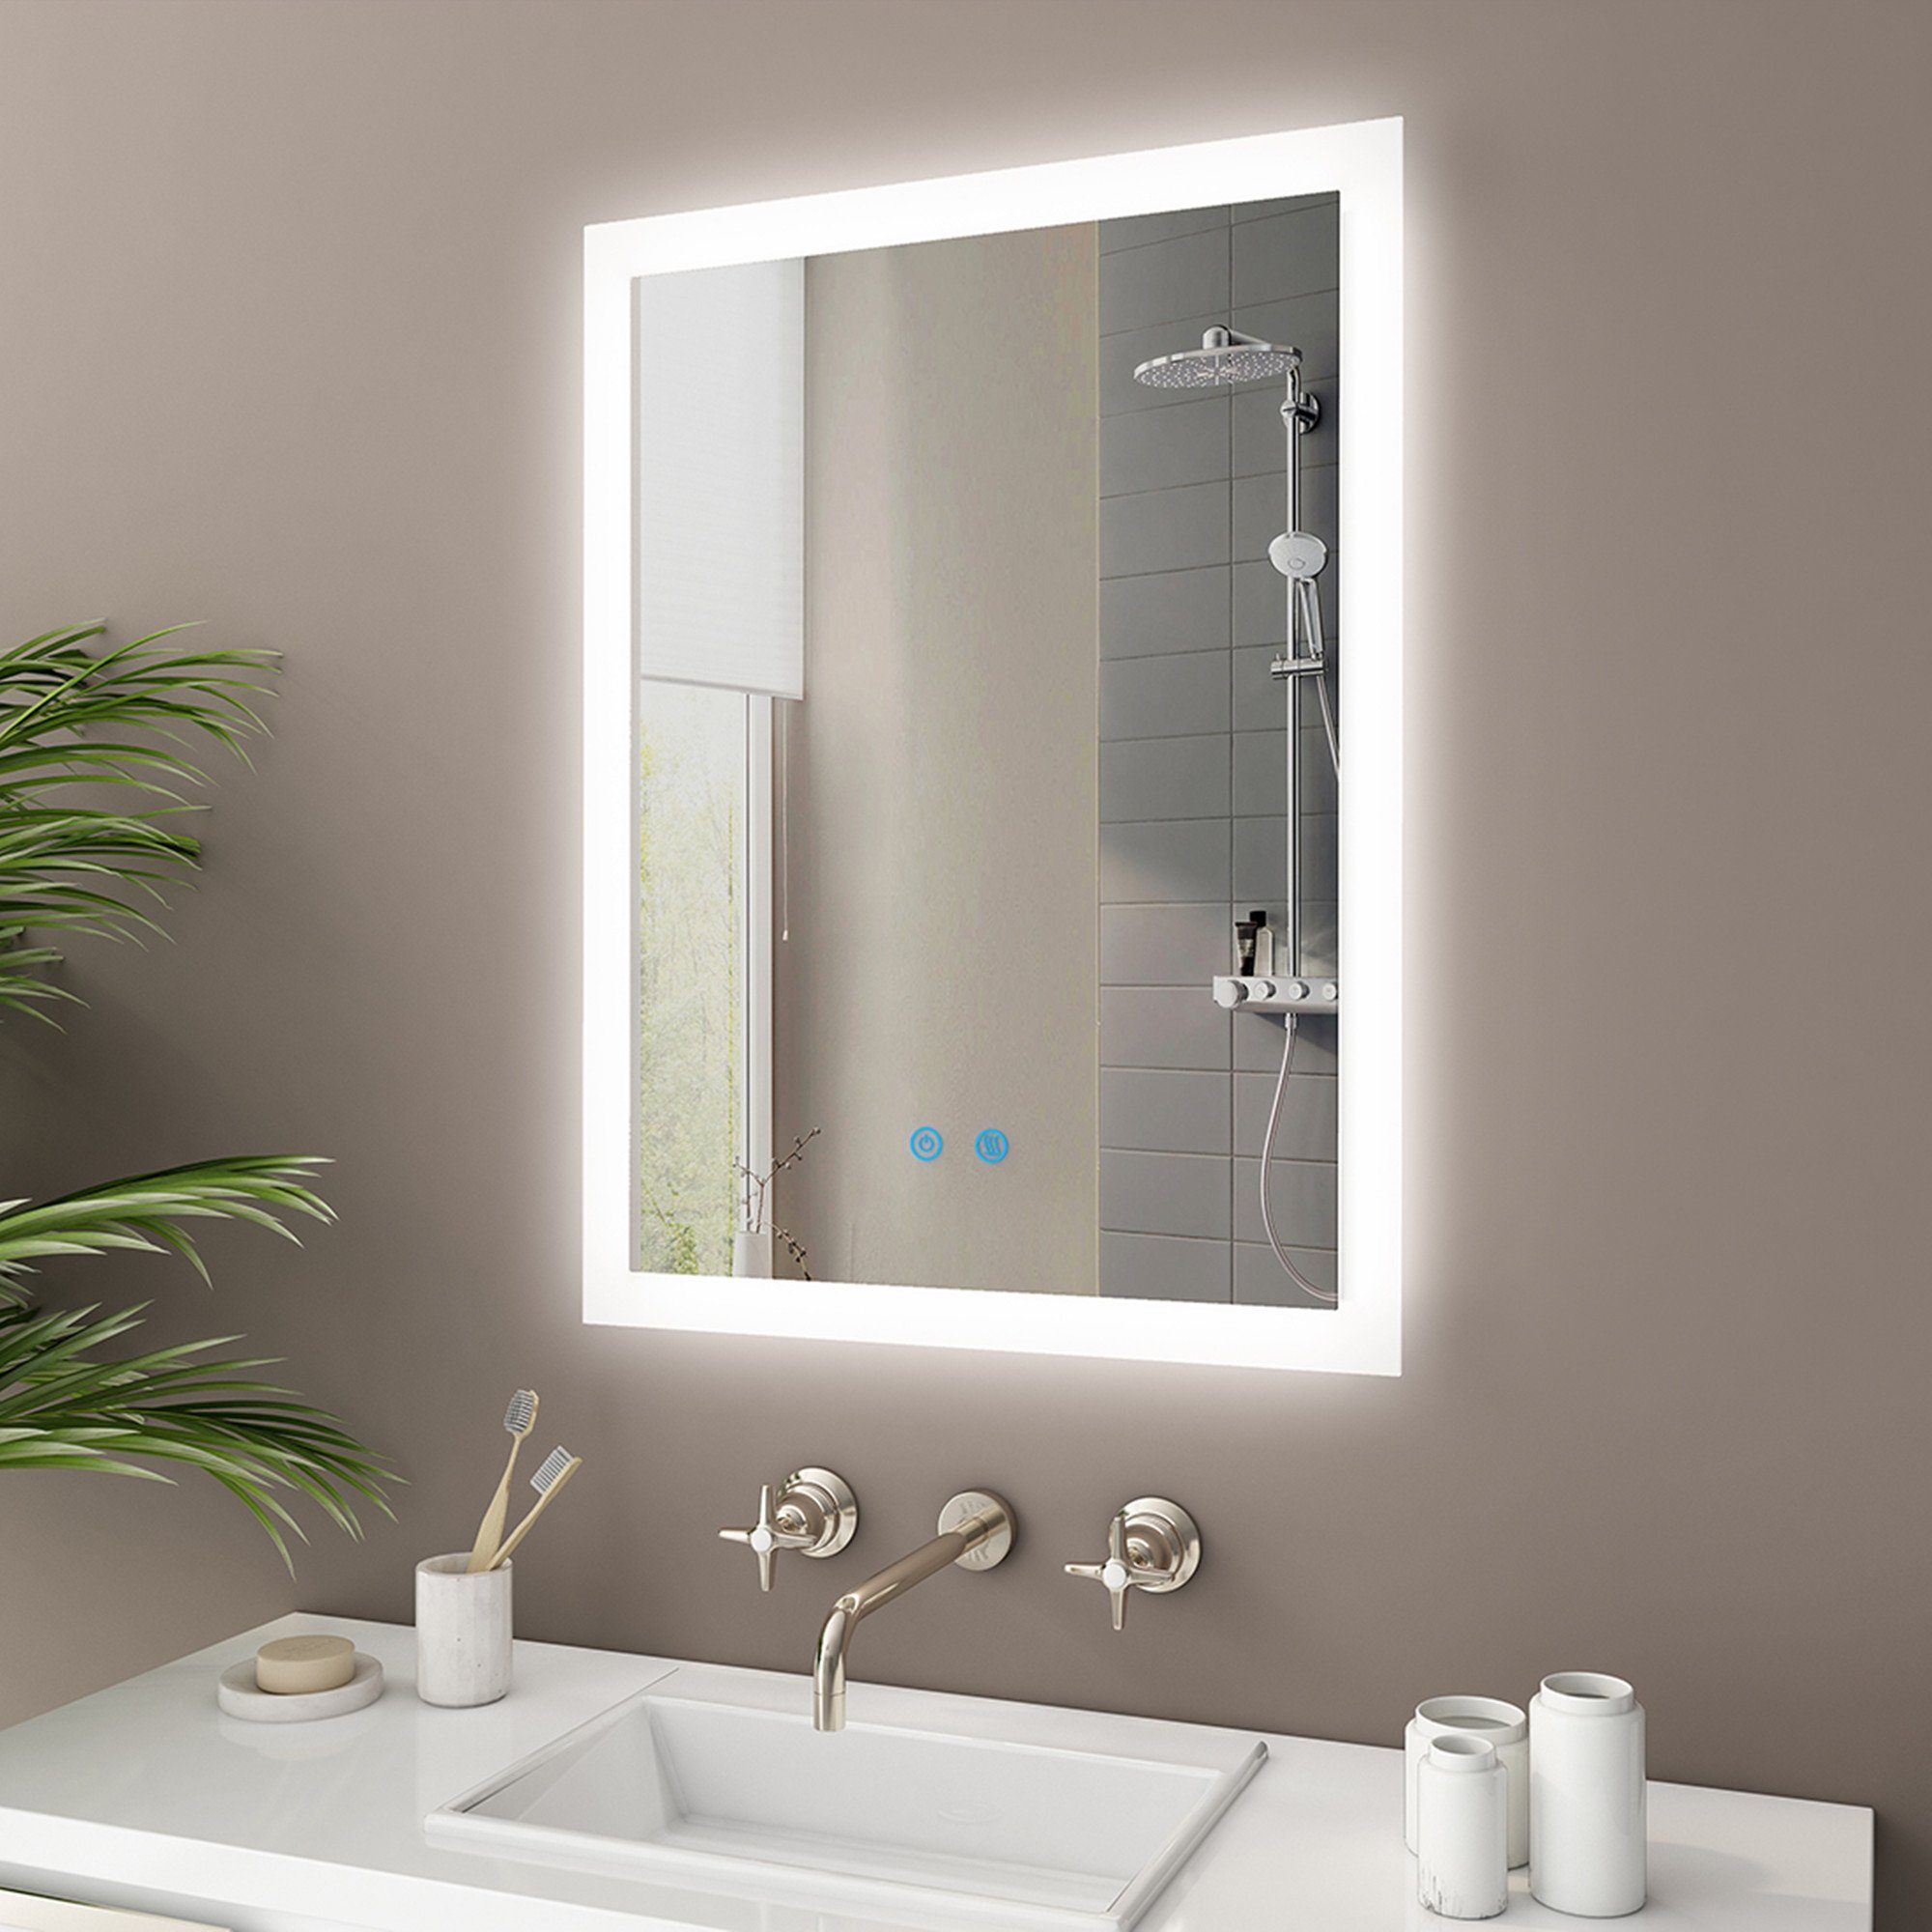 IMPTS Badspiegel »Badezimmerspiegel,LED Badspiegel mit  Beleuchtung,Wandspiegel mit Touchschalter«,  IP44,Energiesparend,Dimmbar,neutralweiß online kaufen | OTTO